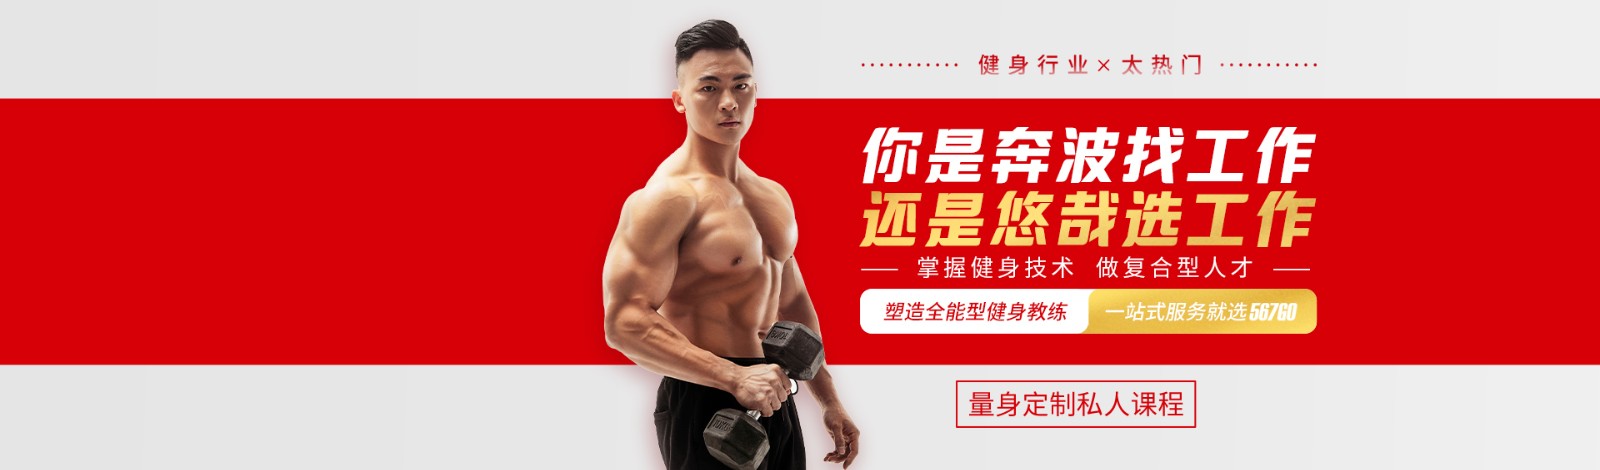 北京567GO健身学院 横幅广告